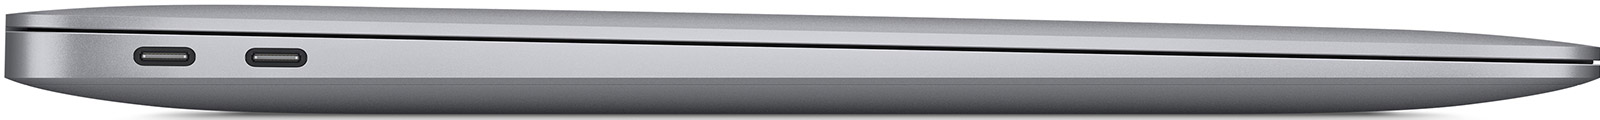 Apple-MacBook-Air-13-3-M1-8-Core-16-GB-1-TB-8-Core-Grafik-Space-Grau-CH-05.jpg